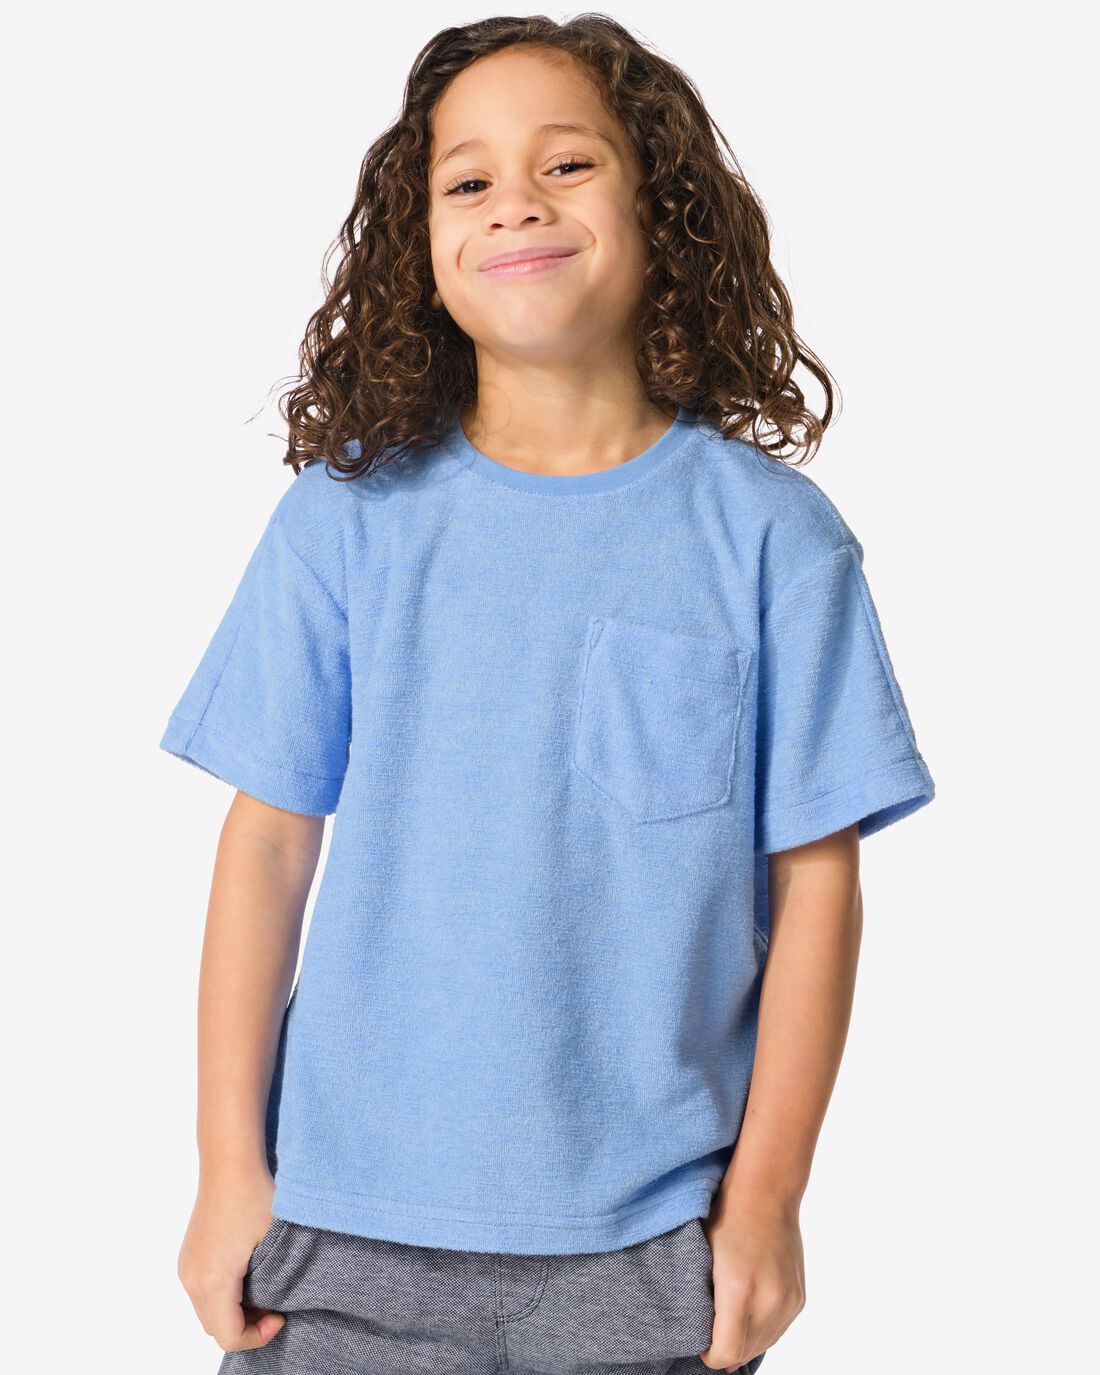 HEMA Kinder T-shirt Badstof Blauw (blauw)